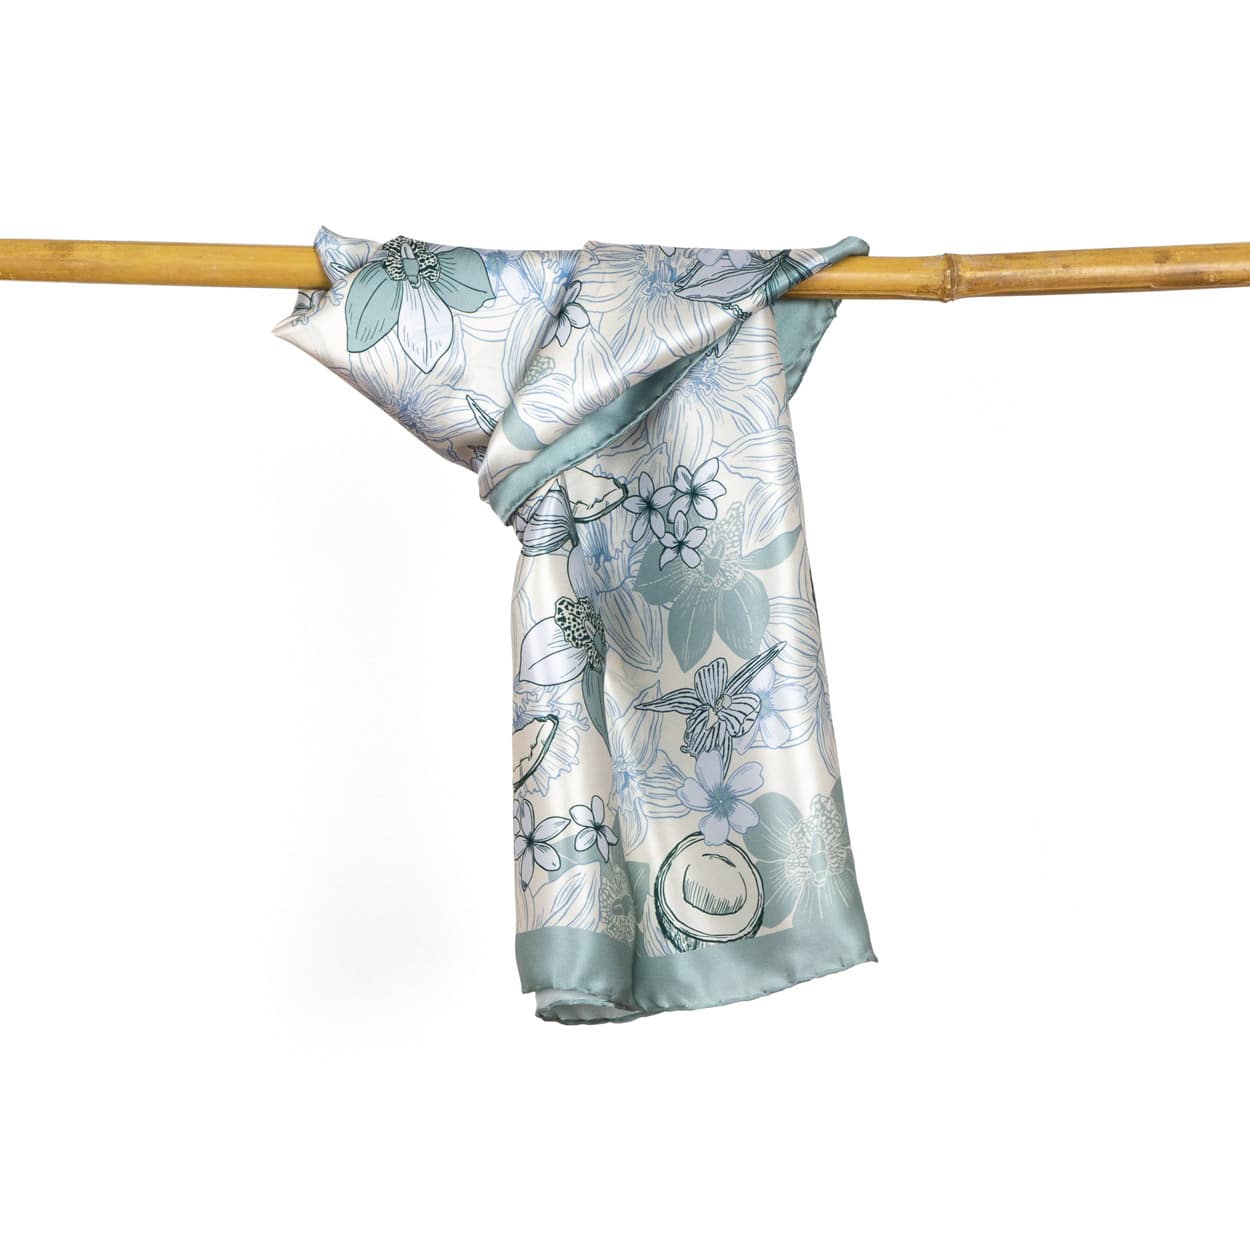 Pañuelo de seda cuadrado para mujer de color celeste con estampado de flores y cocos